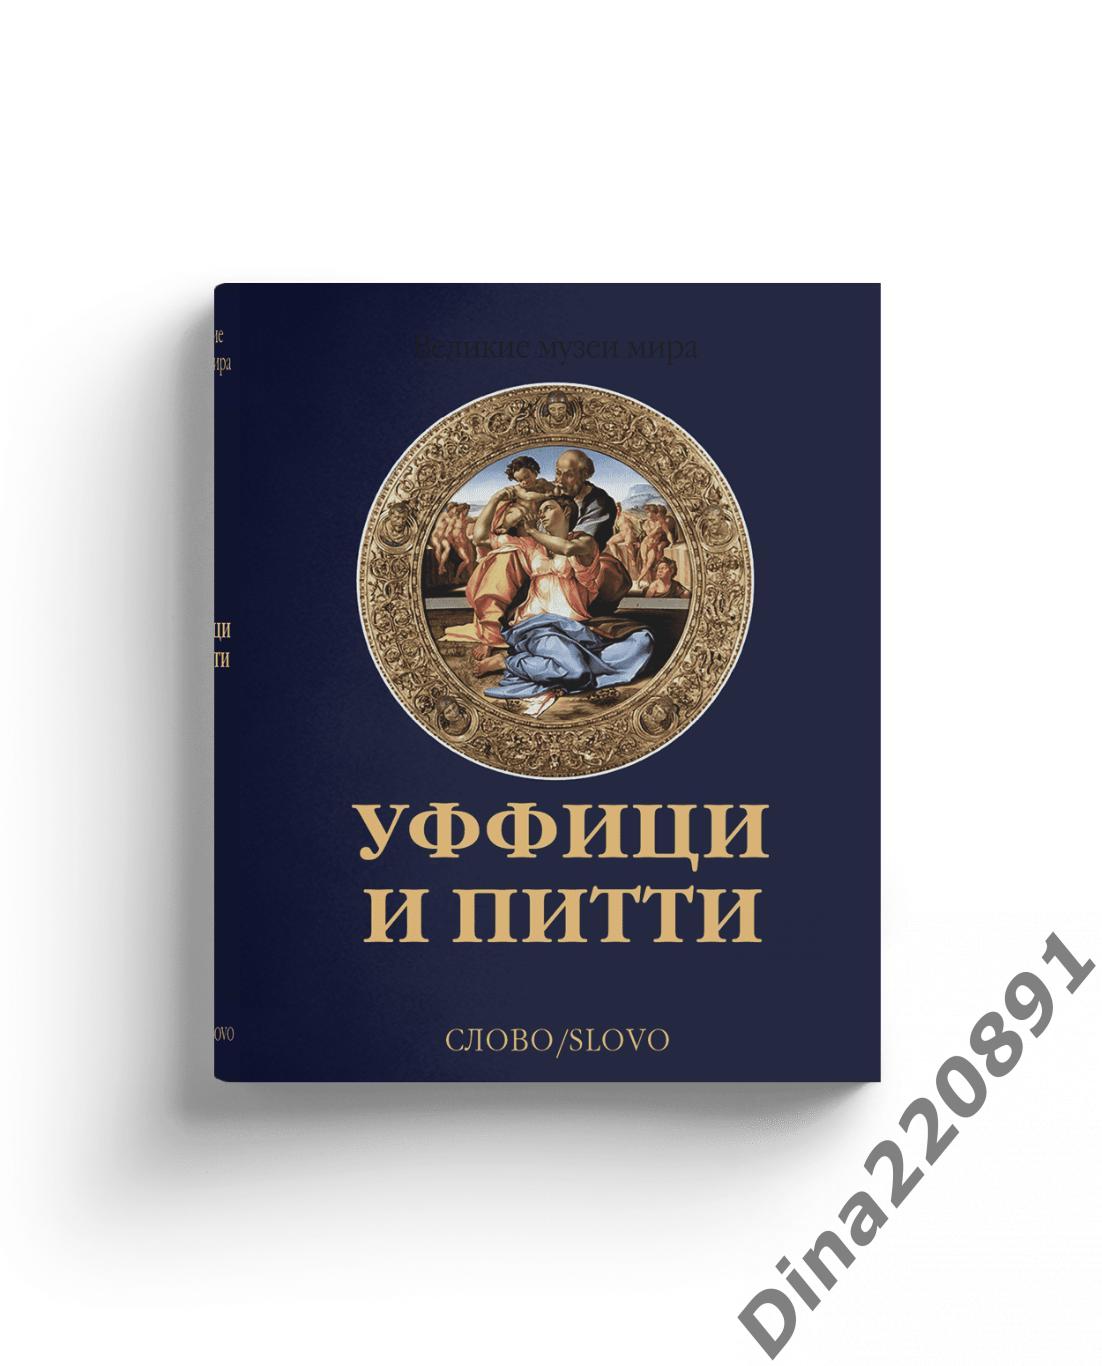 Фотоальбом Уффици и Питти, Великие музеи мира, Изд-во Слово 1